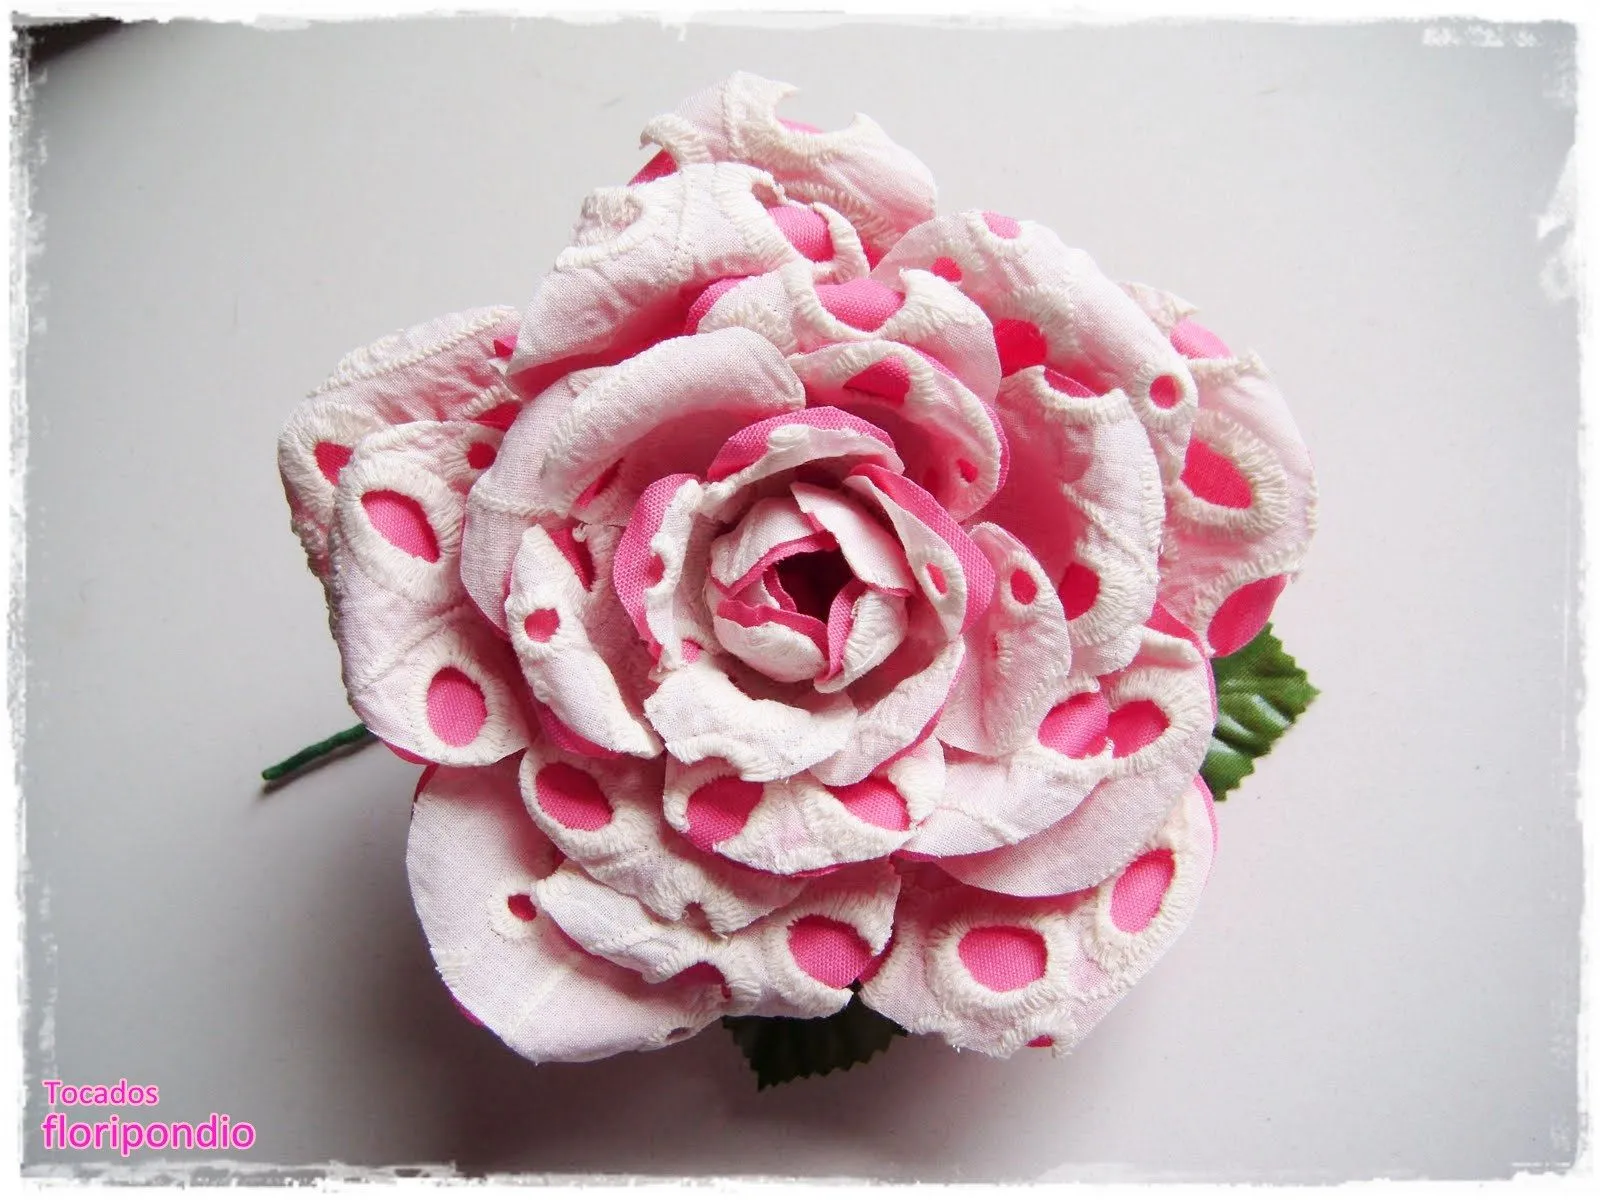 Tocados floripondio: Flores de Flamenca hechas a mano con telas ...